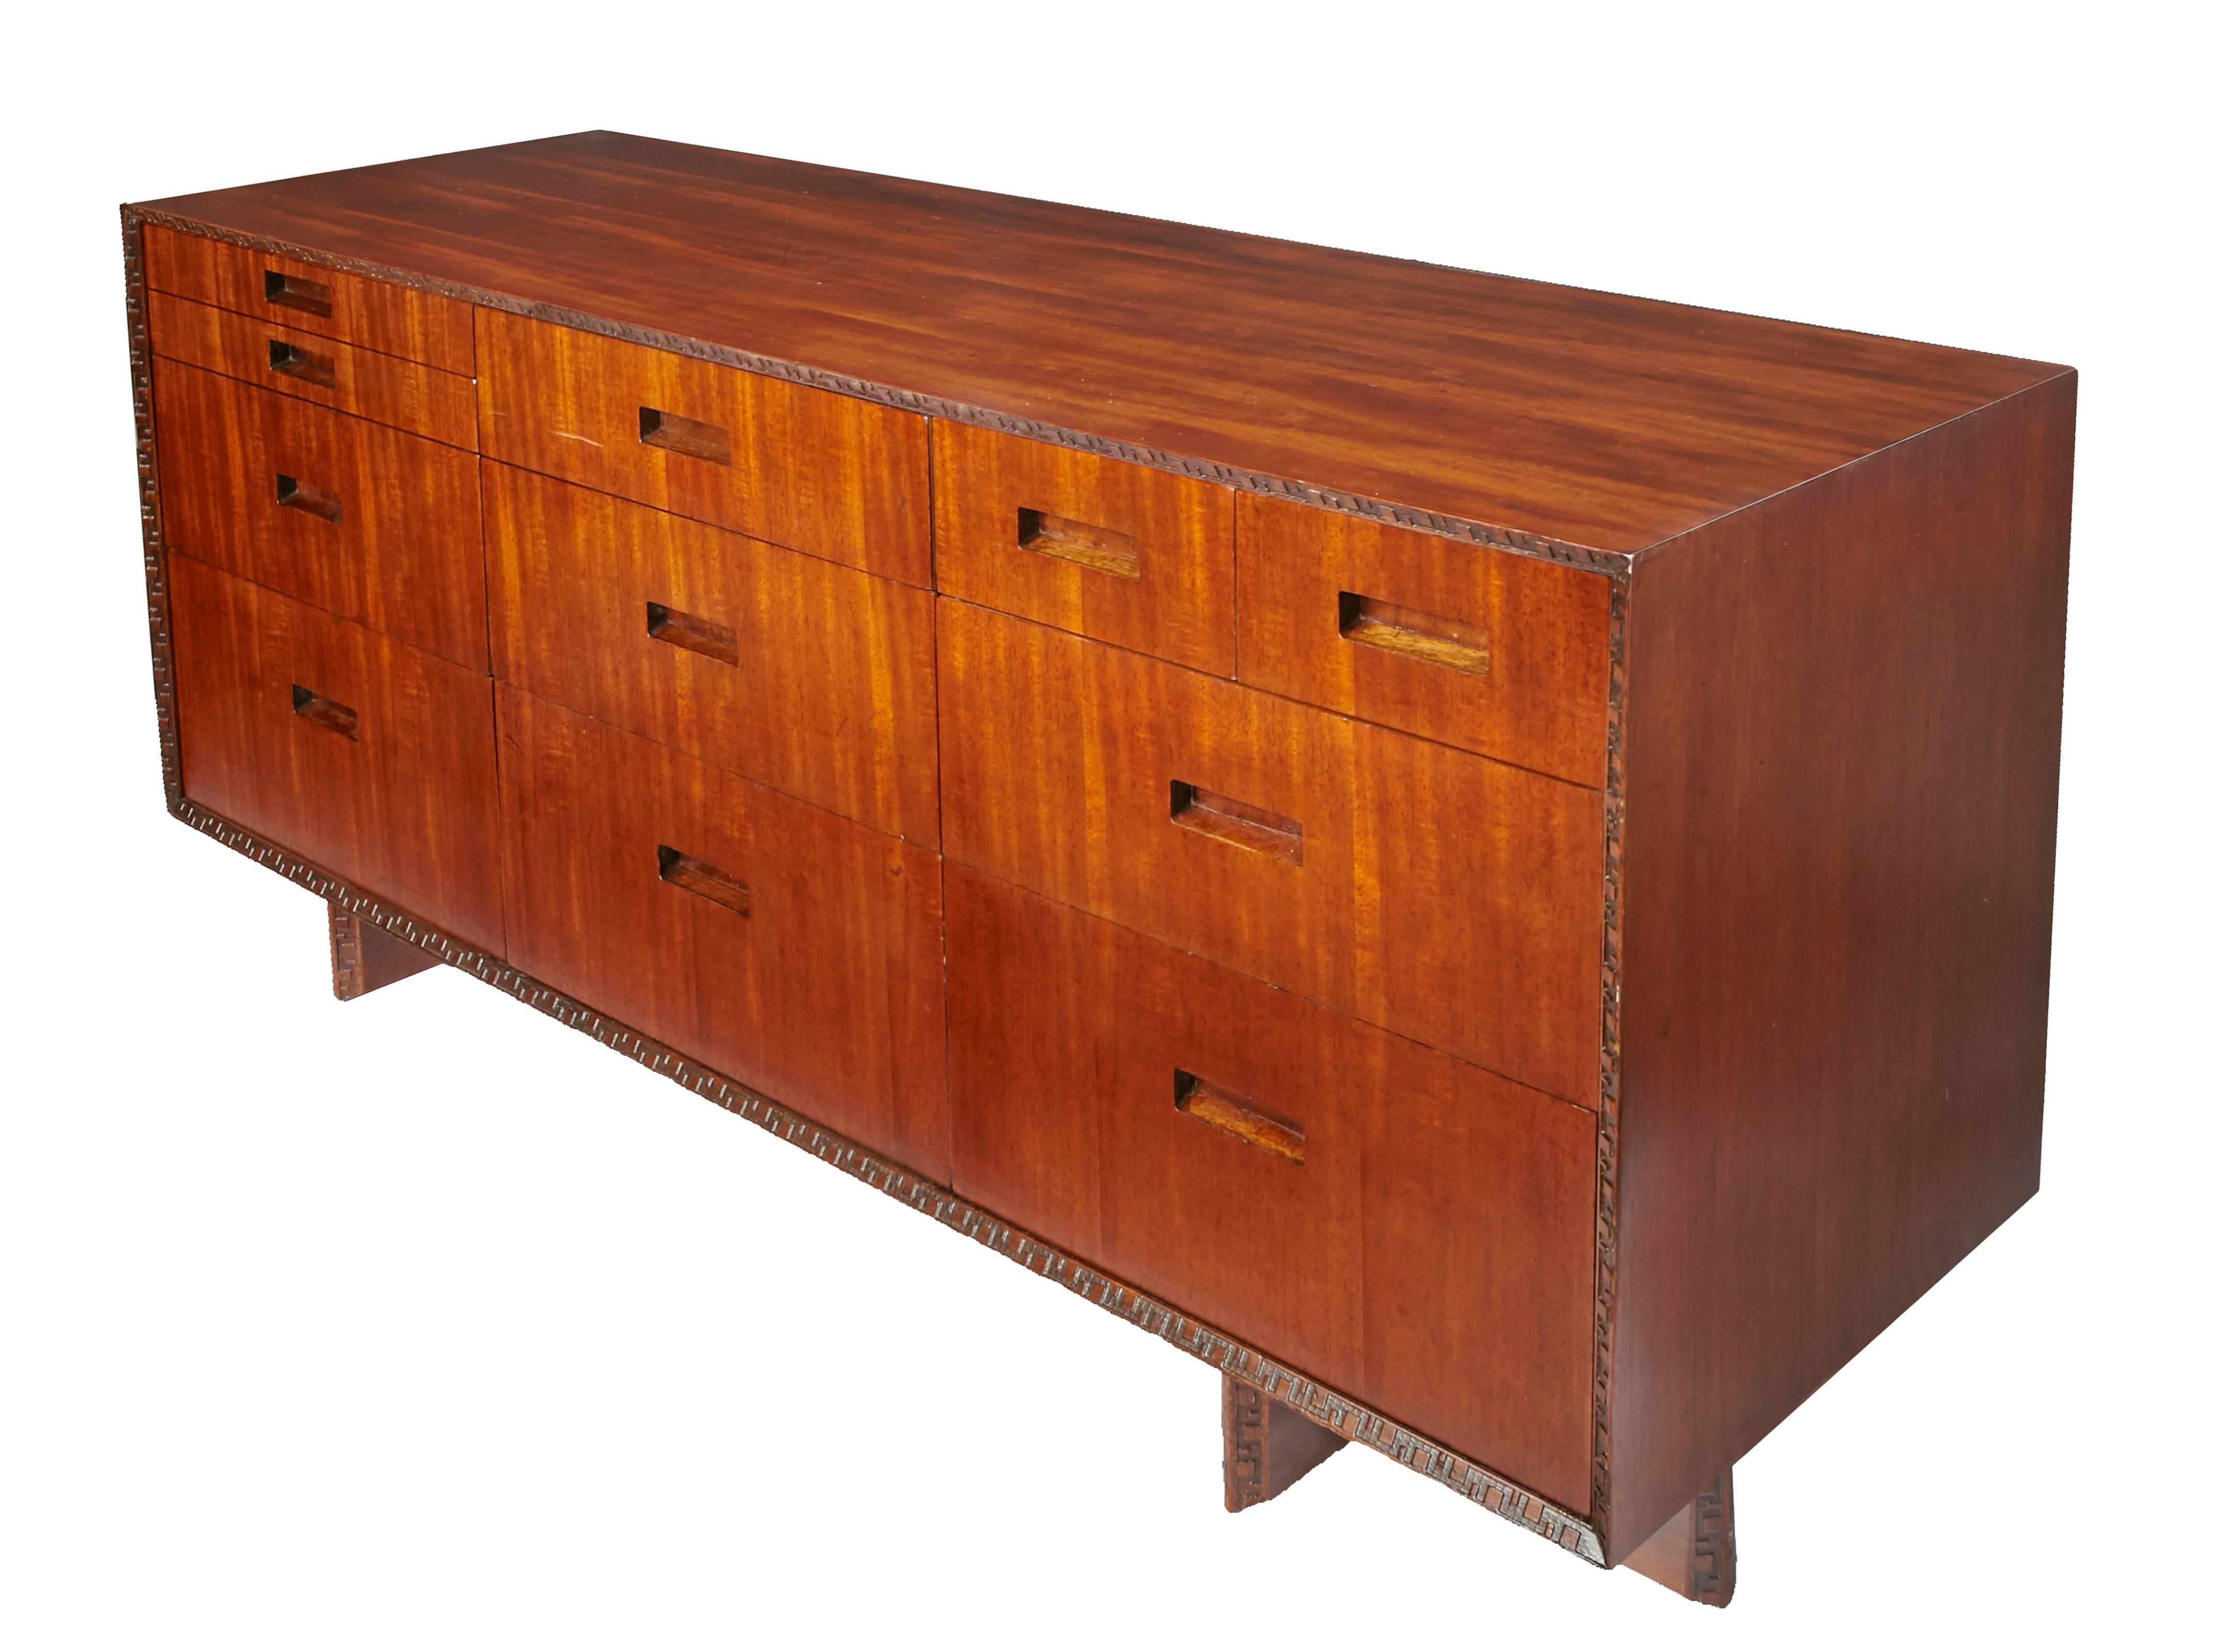 Veneer Frank Lloyd Wright Dresser for Heritage Henredon from the 